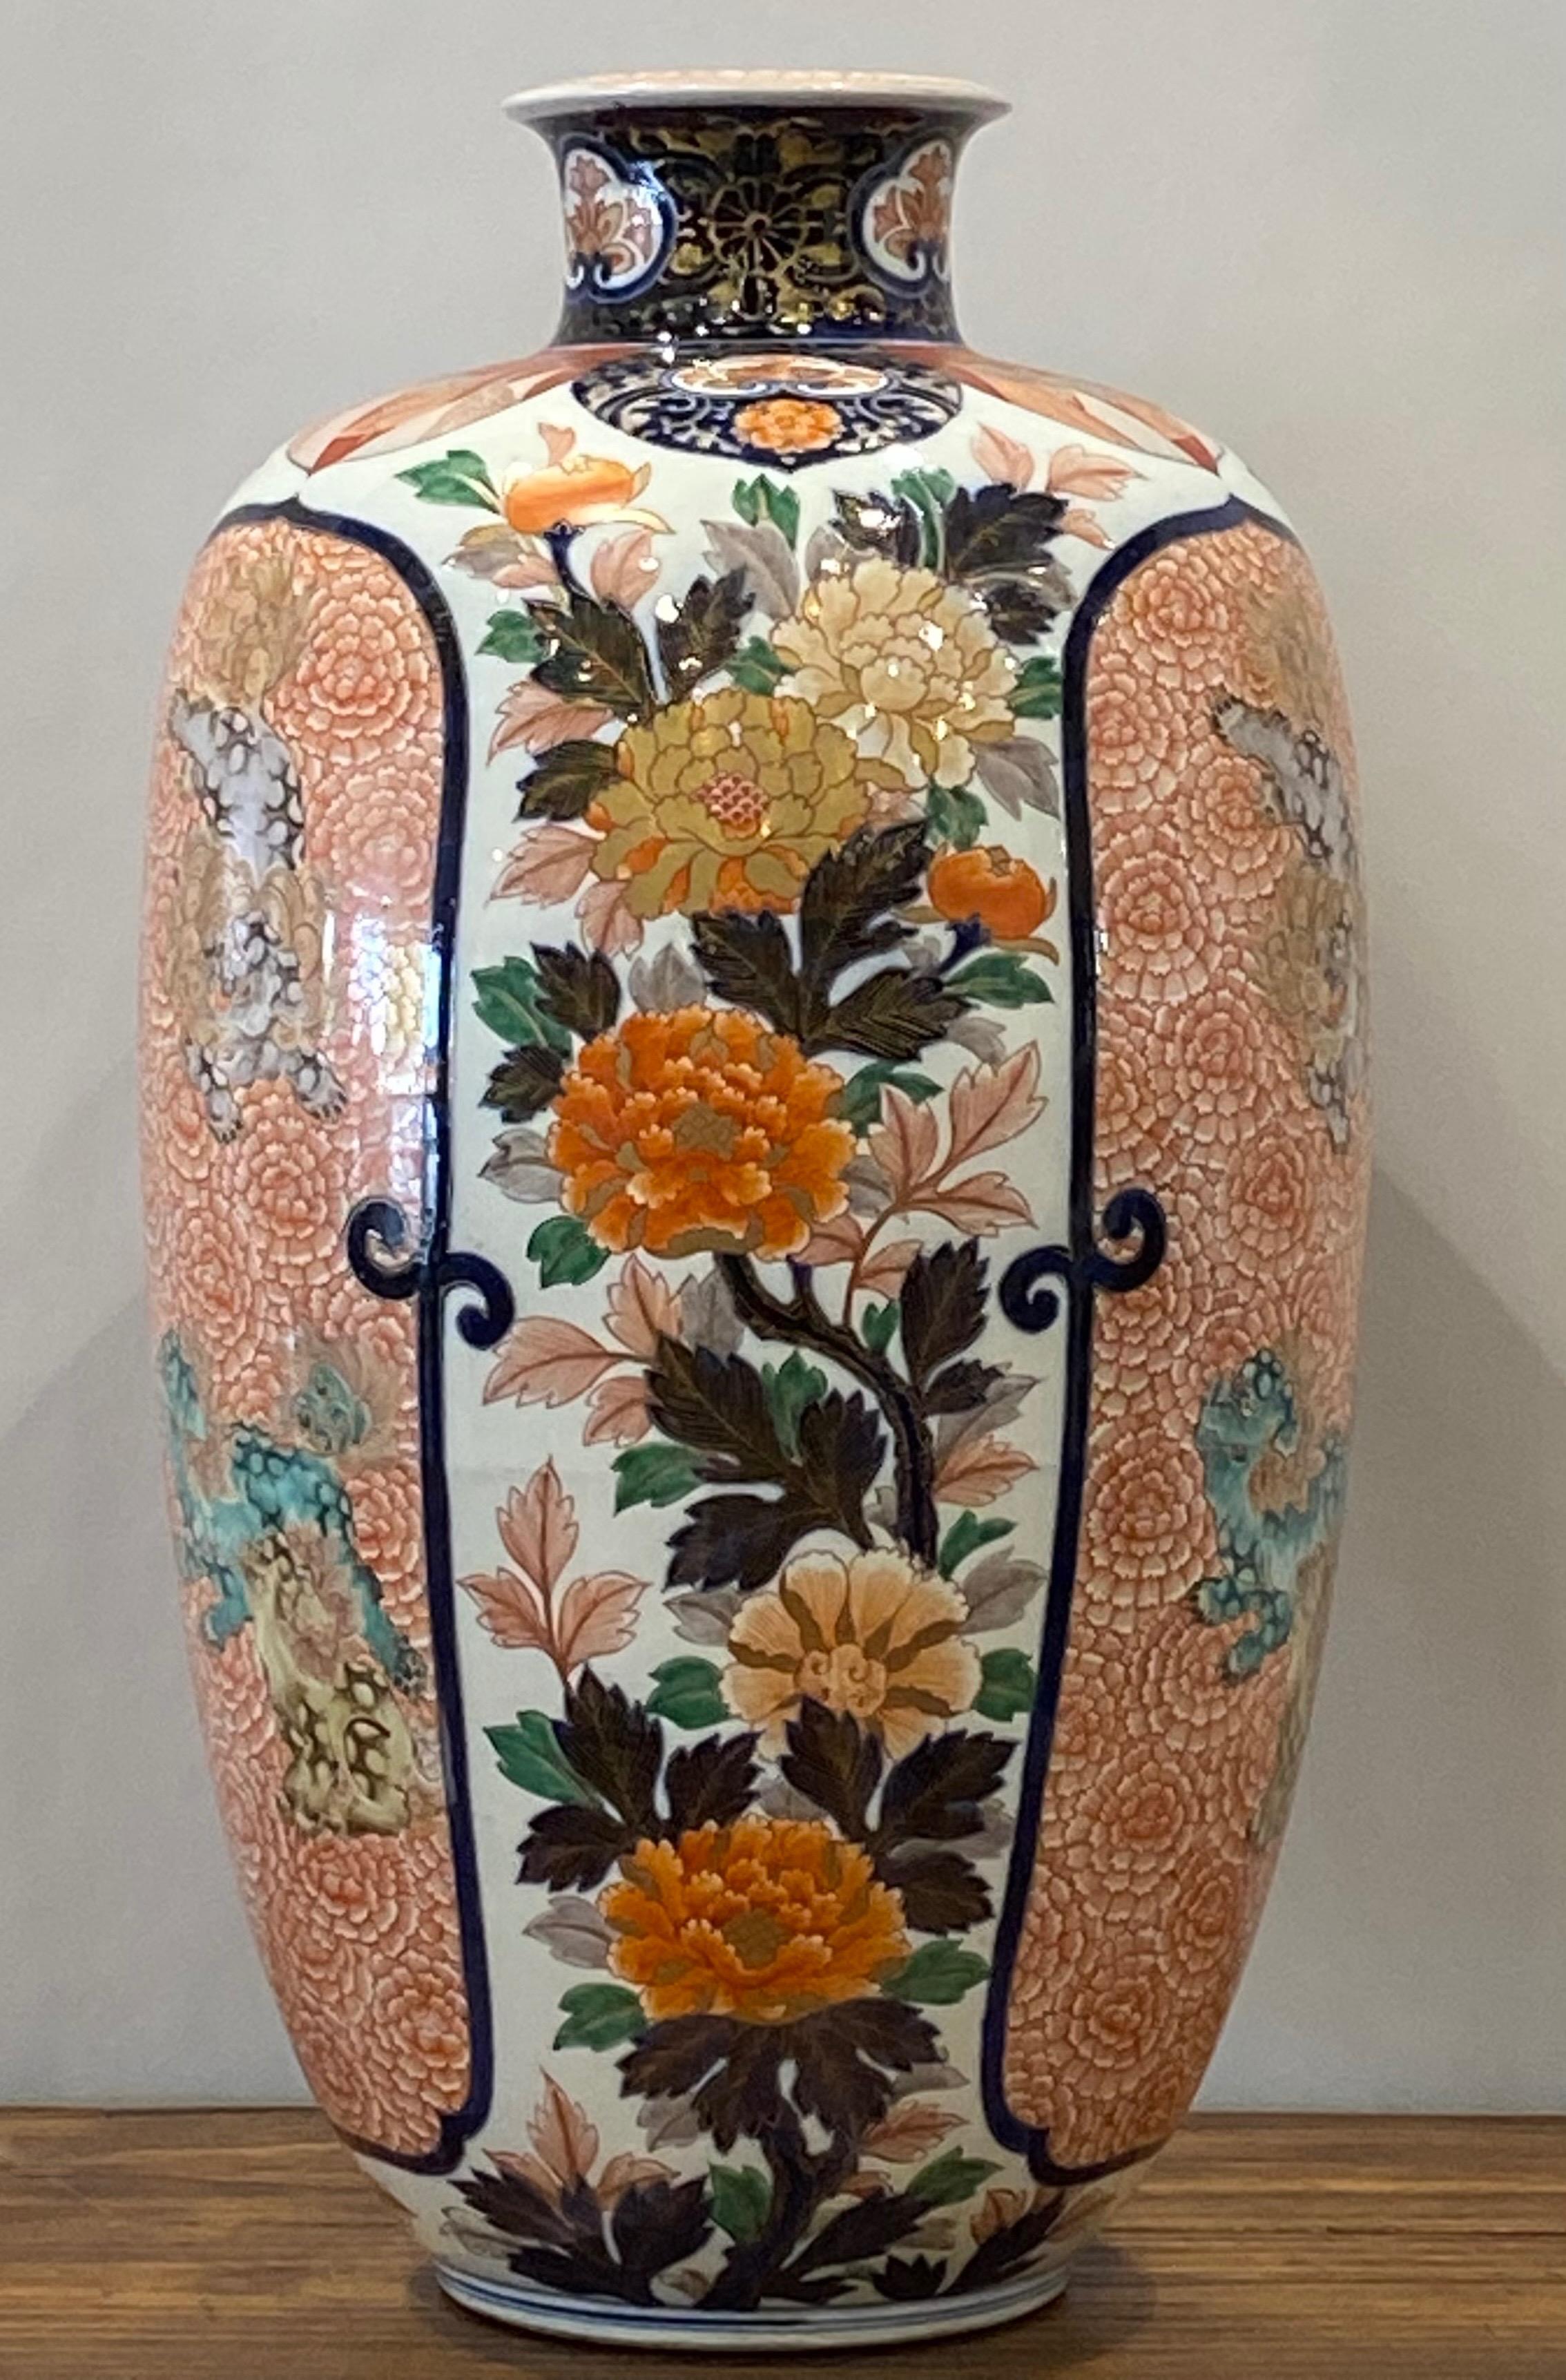 Un grand et impressionnant vase Imari du 19e siècle, avec un motif floral classique peint à la main et des panneaux insérés représentant des chiens Foo enjoués.
Japon, période Meiji, fin du XIXe siècle.
Peinture exquise, taille inhabituelle, en